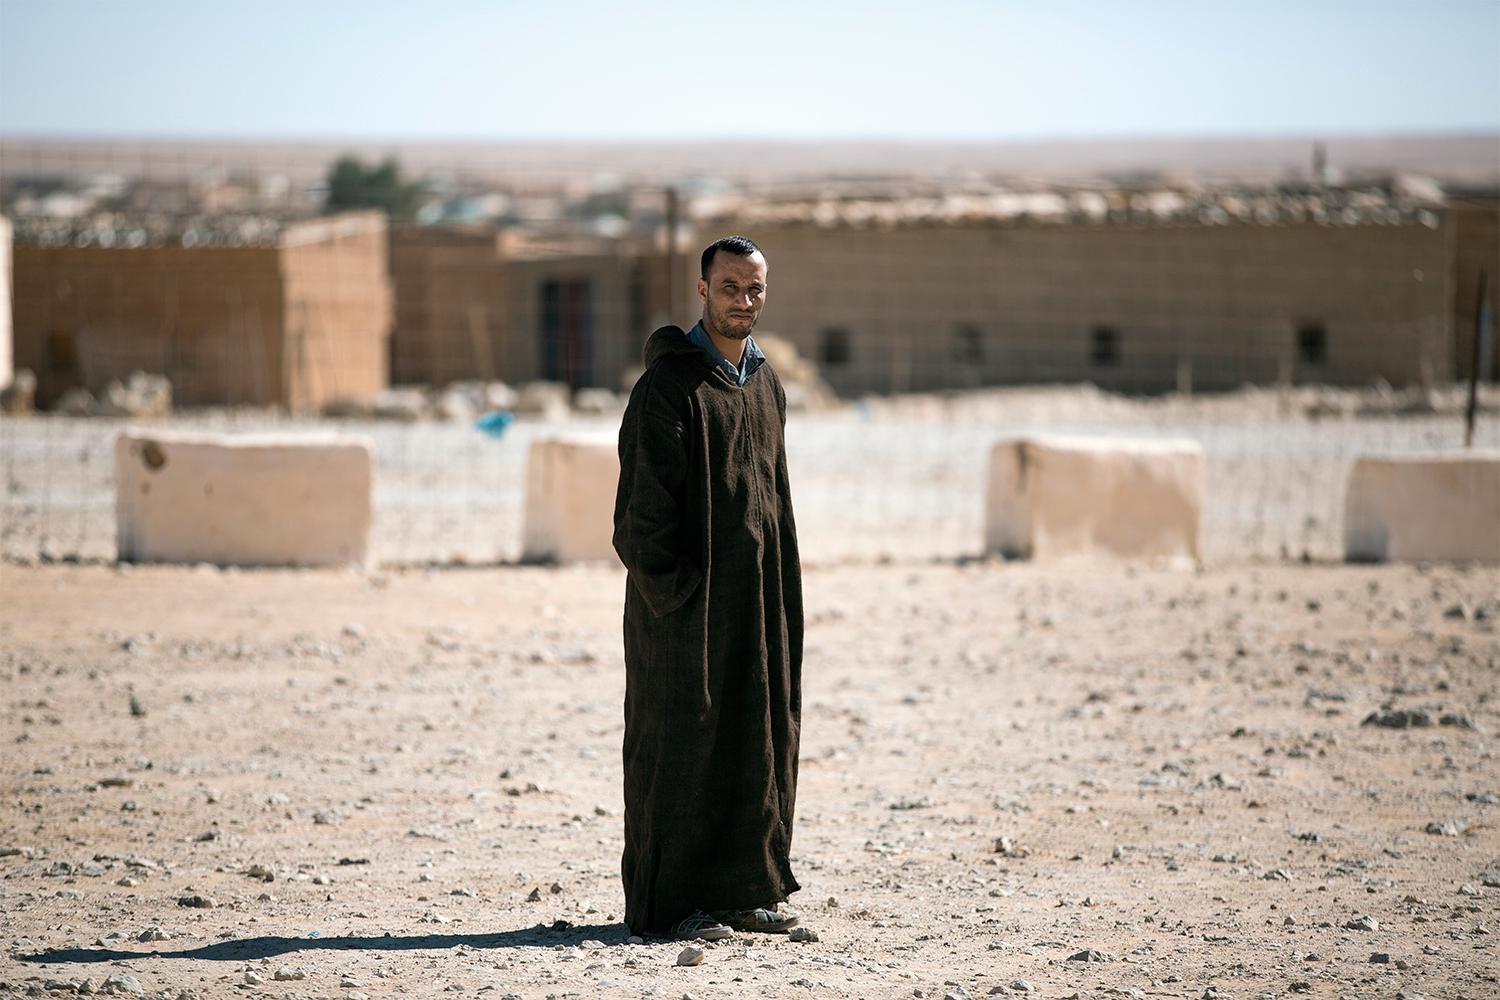 32-årige Mohamed Salem jobbar som engelsklärare i flyktinglägret Smara. Han menar att så länge västsaharierna sitter passiva i öknen, tjänar alla andra på status quo. ”Ärligt talat, vårt problem är att vi är för fredliga. Så länge ingenting smäller kommer ingen sätta ner foten mot Marocko.” Johan Persson